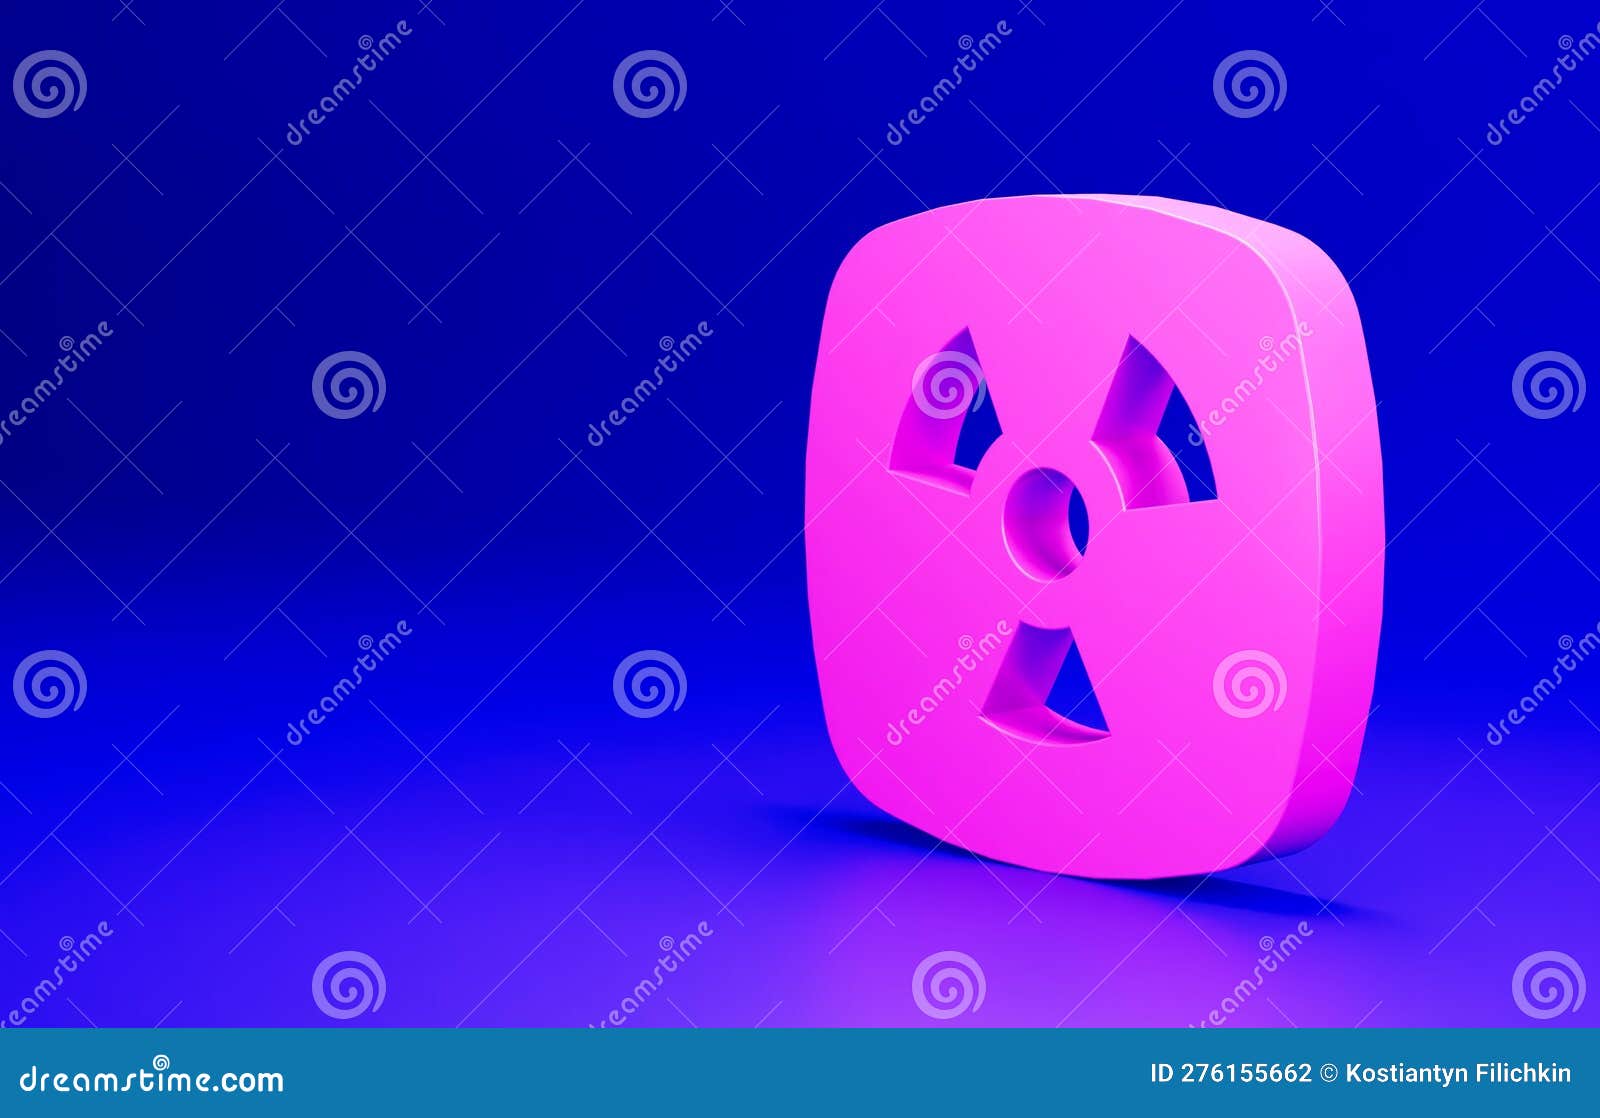 ícone tóxico. pictograma de radiação. símbolo de aviso de risco